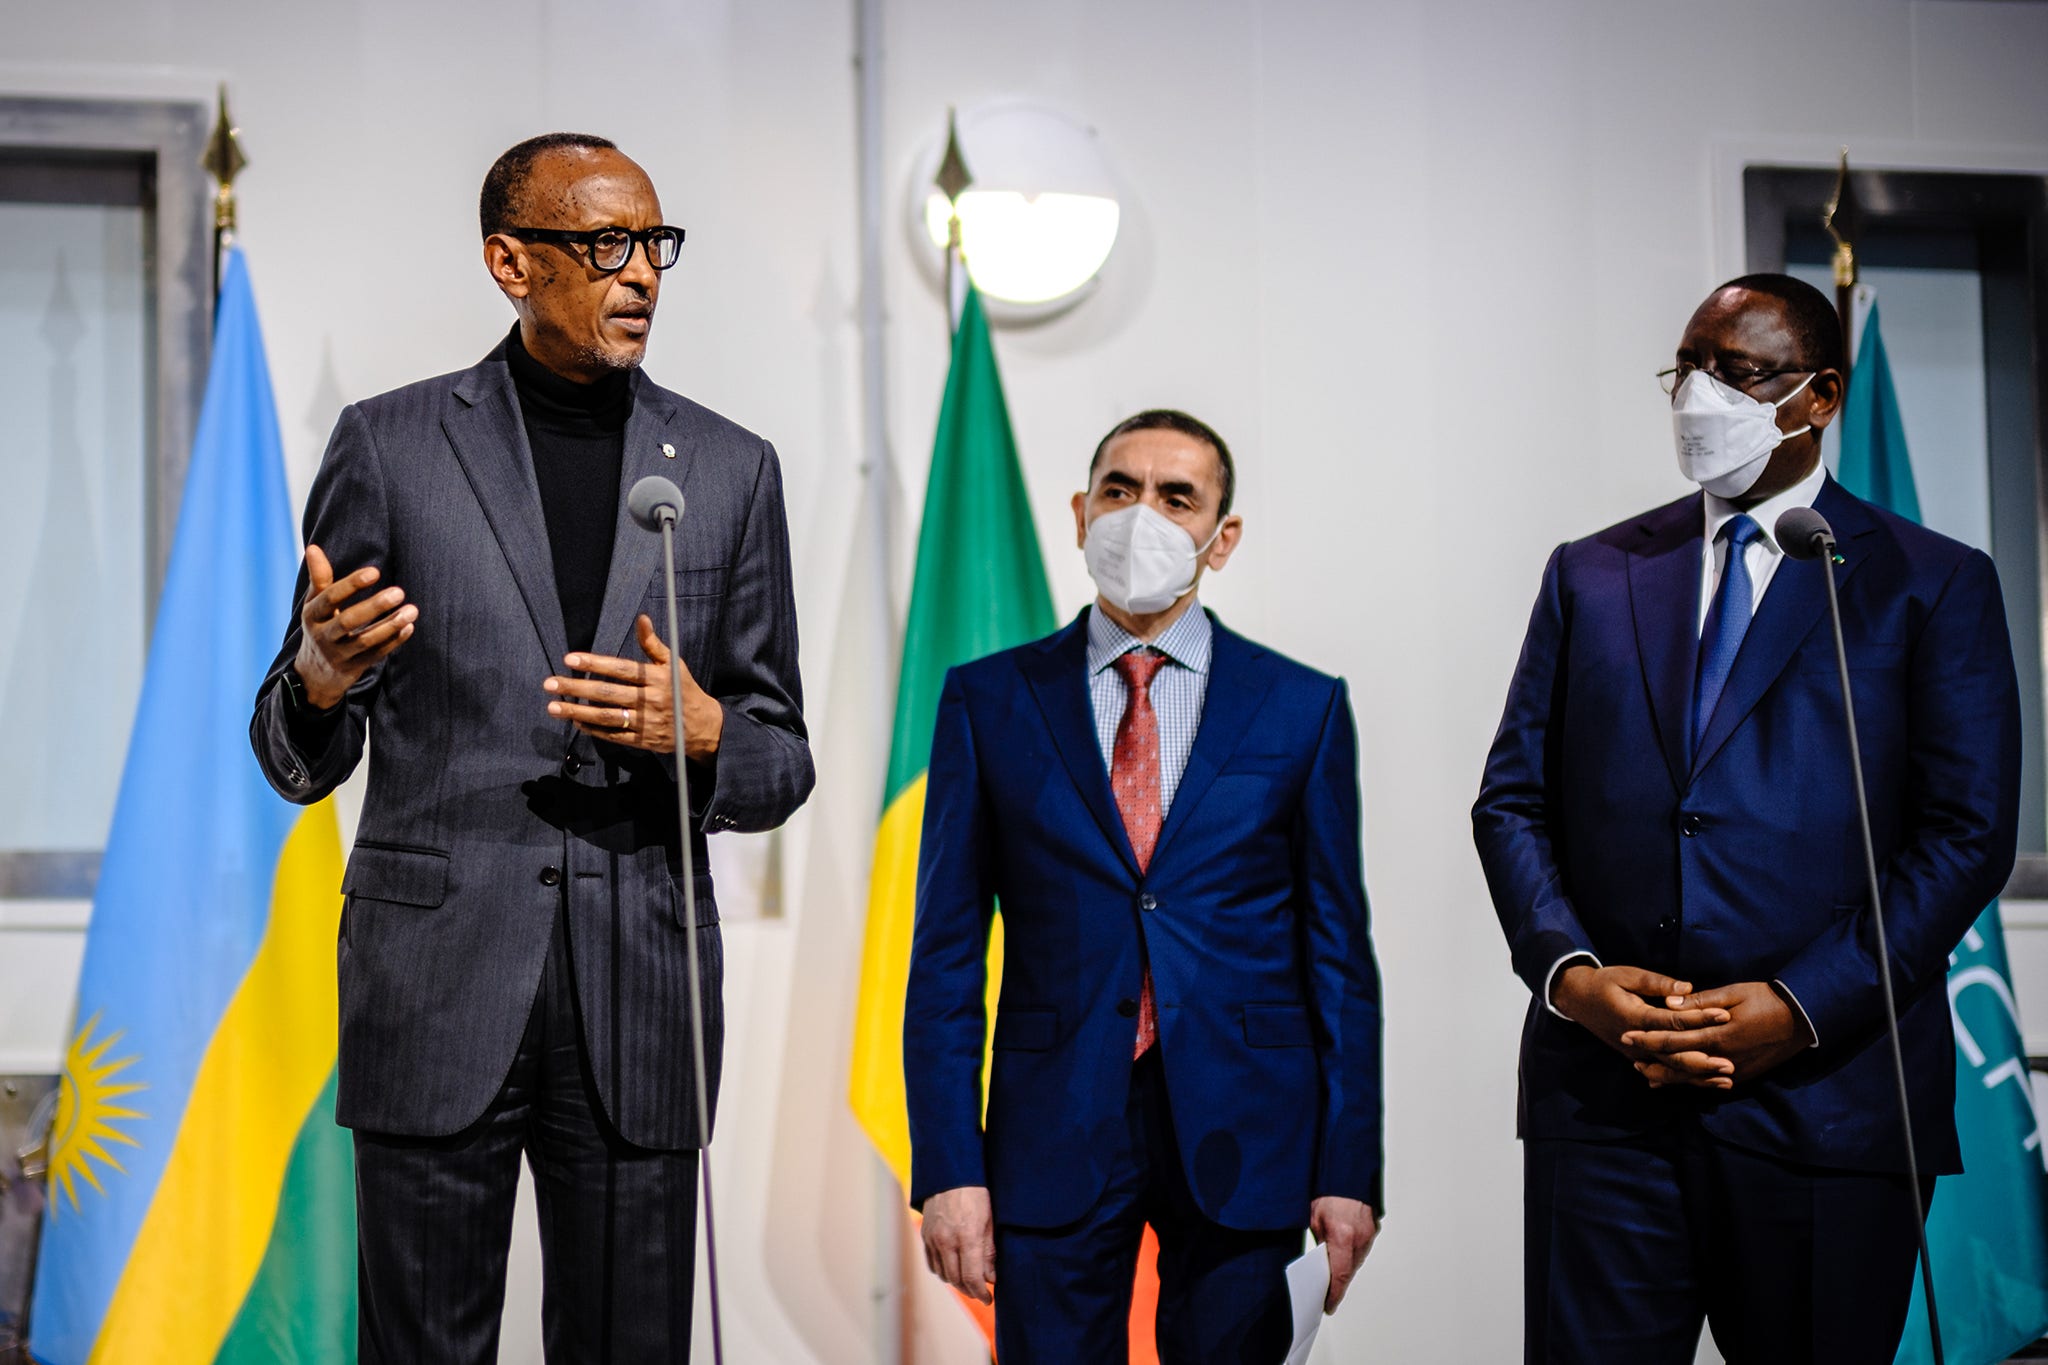 H.E. President Paul Kagame of Rwanda speaking 2